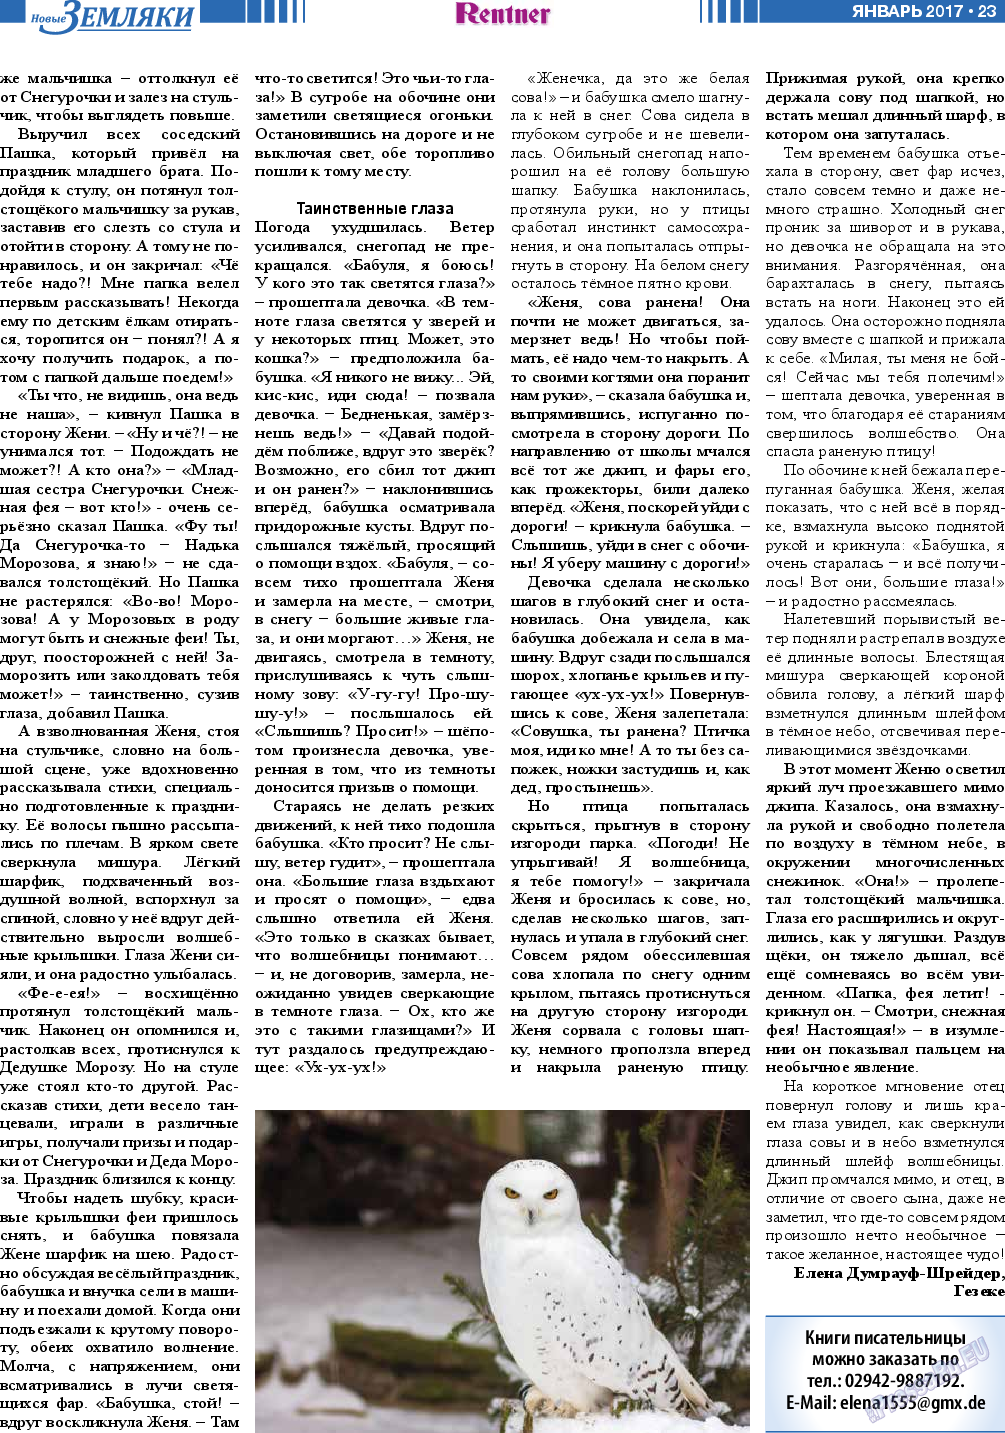 Новые Земляки, газета. 2017 №1 стр.23